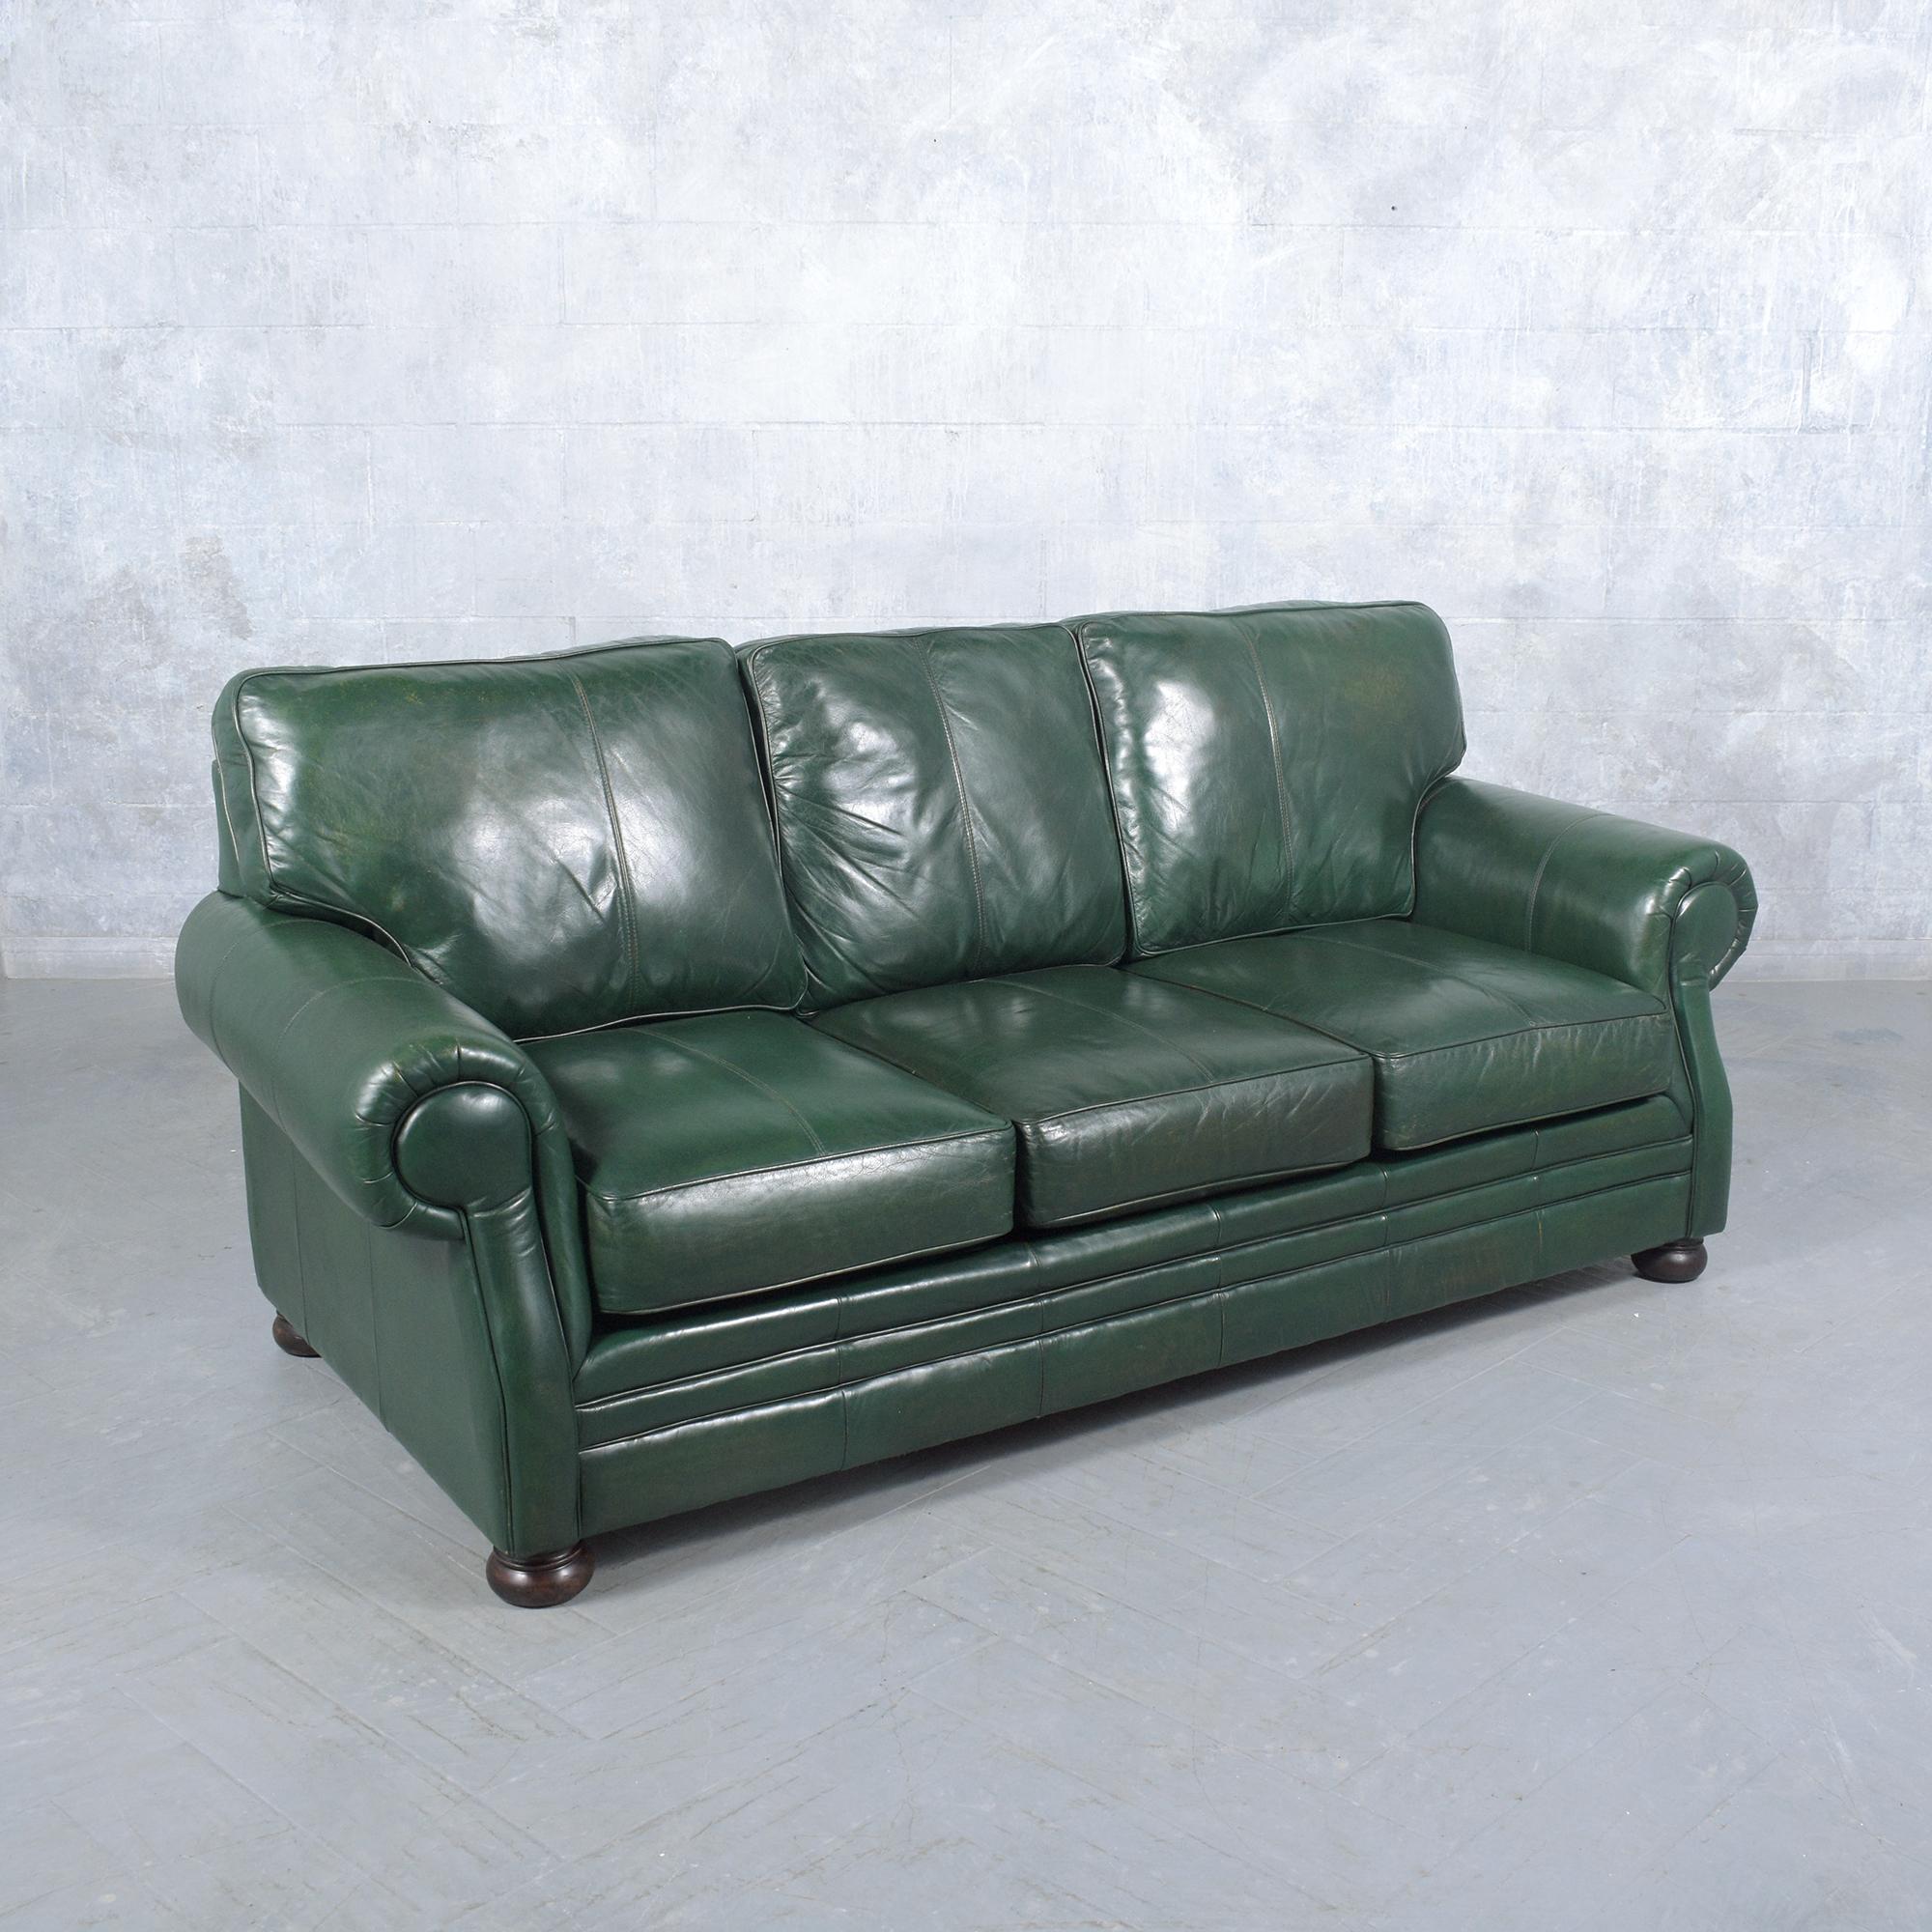 Carved Elegant 1980s Restored Leather Sofa: A Blend of Vintage and Modern For Sale